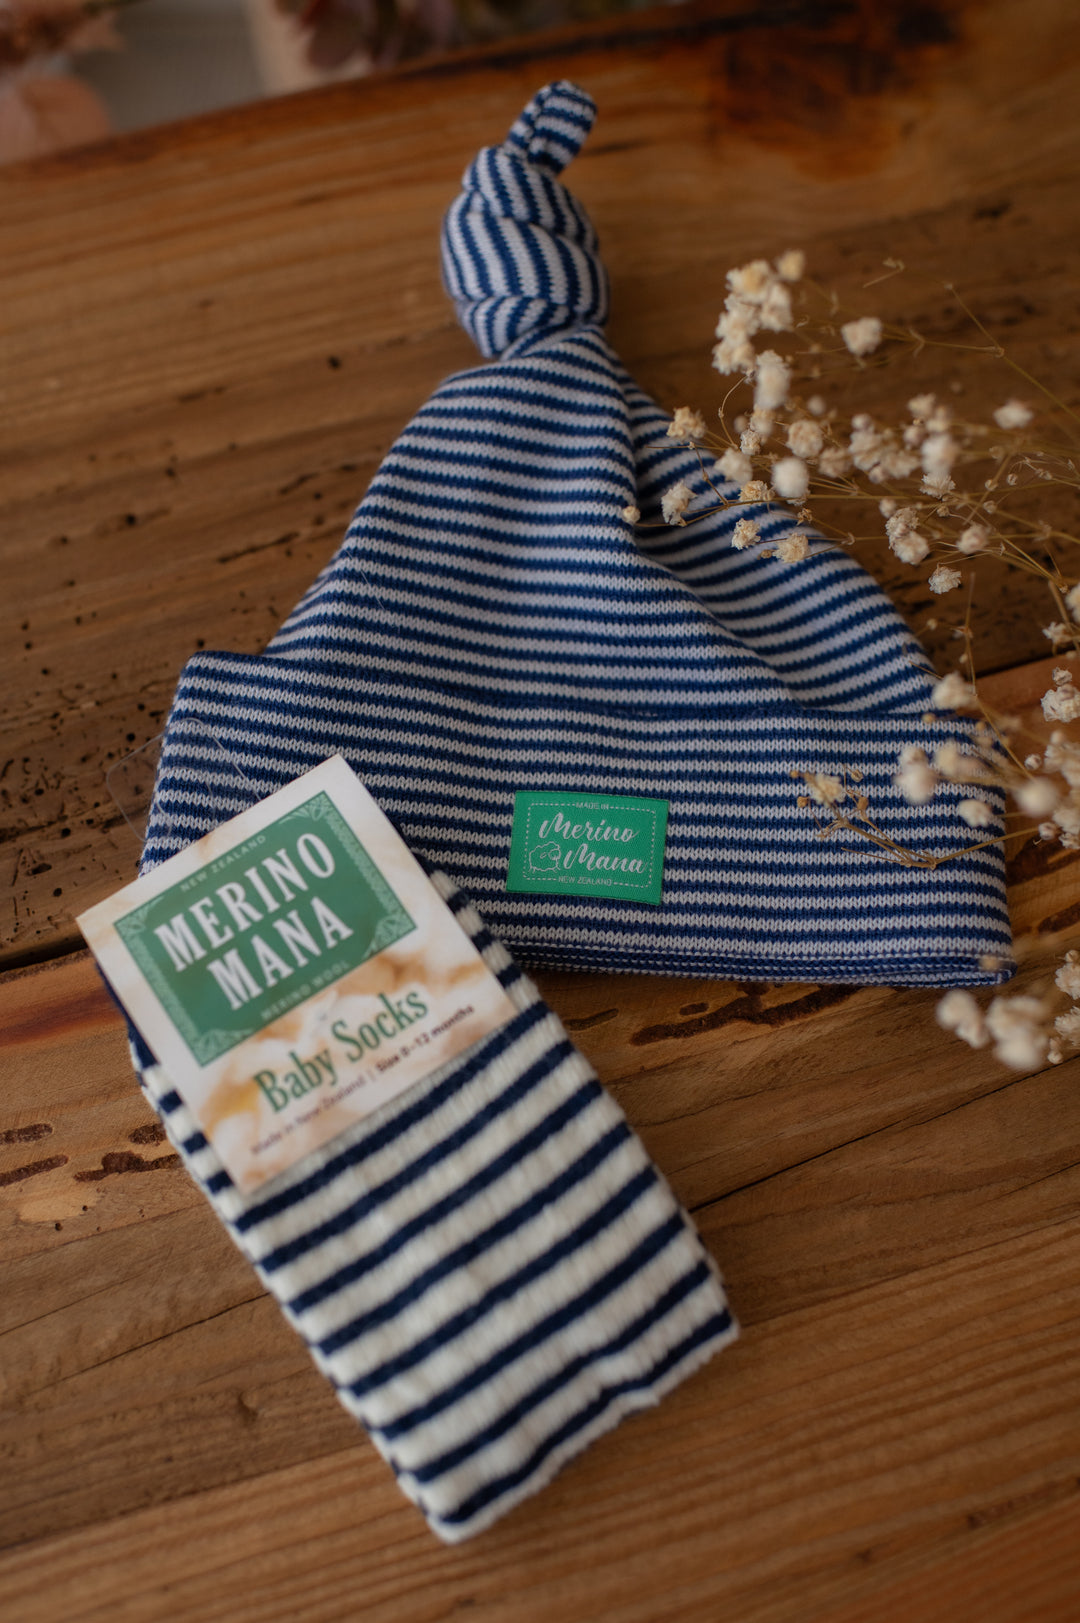 Merino Wool Top Knot Hat and Merino Wool Socks Gift Set